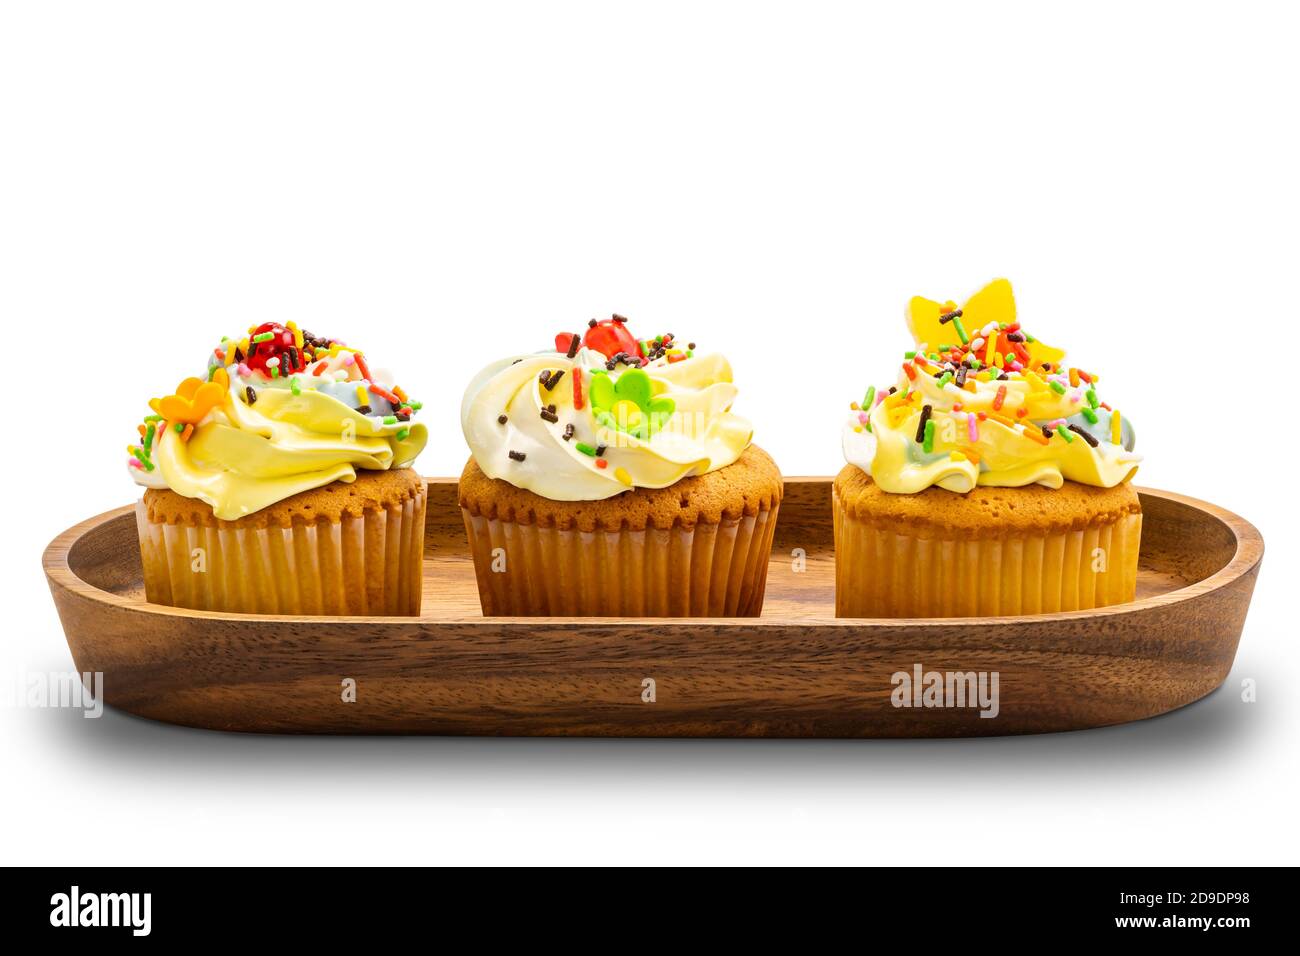 Torte di tazza di vaniglia con crema di burro colorata e spolverate multicolore in vassoio di legno su sfondo bianco con percorso di ritaglio. Foto Stock